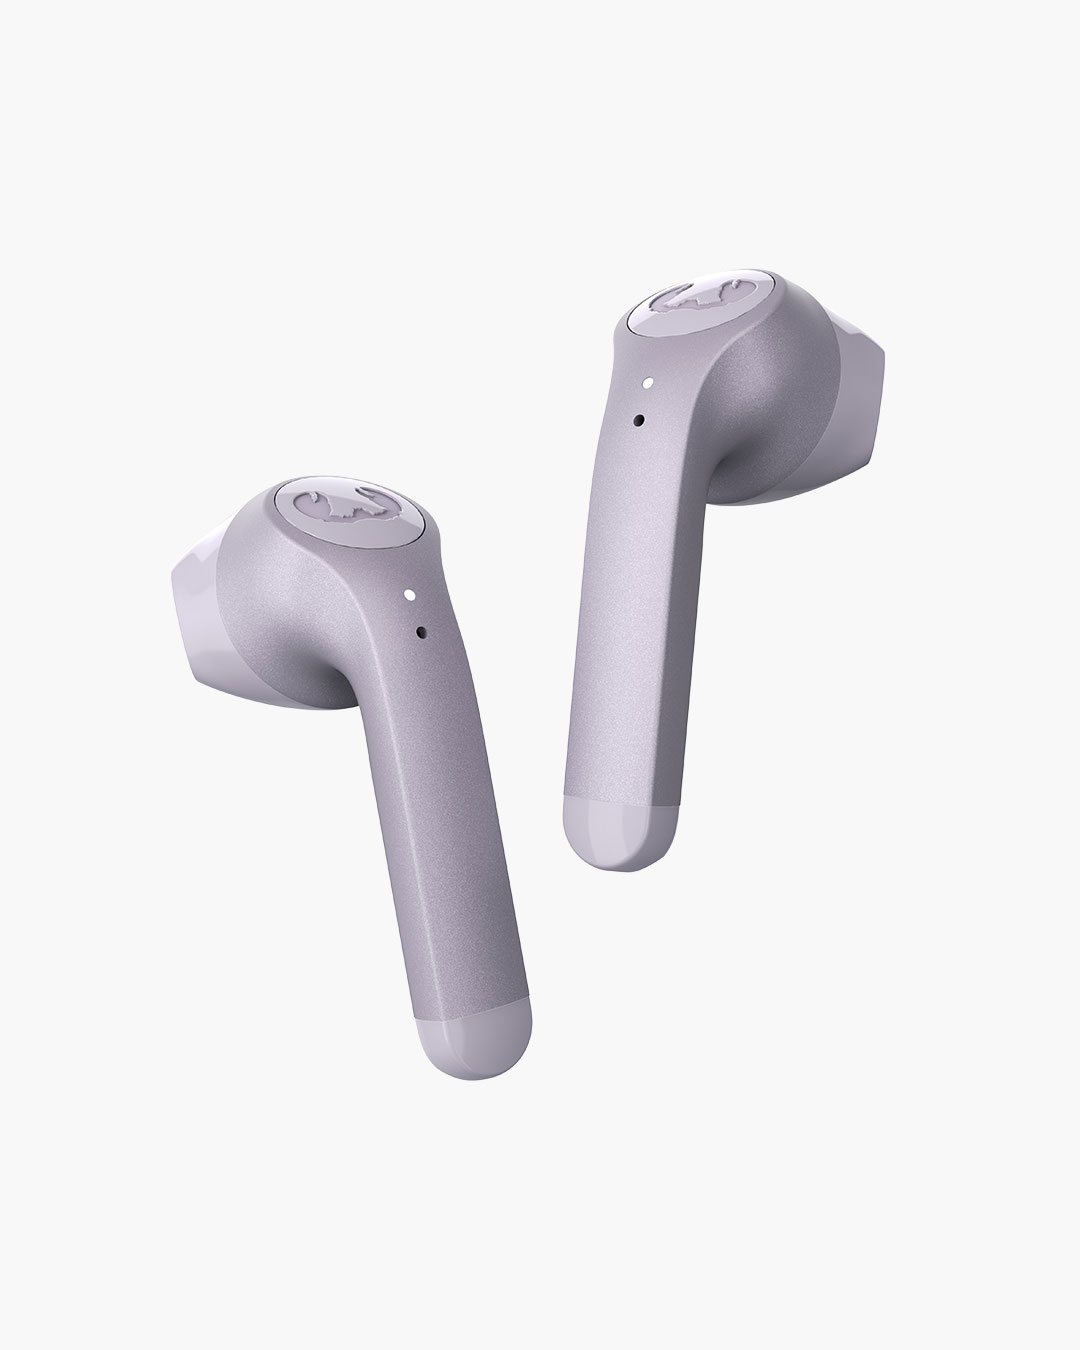 Fresh 'n Rebel - Twins 3 - True Wireless In-ear headphones - Dreamy Lilac